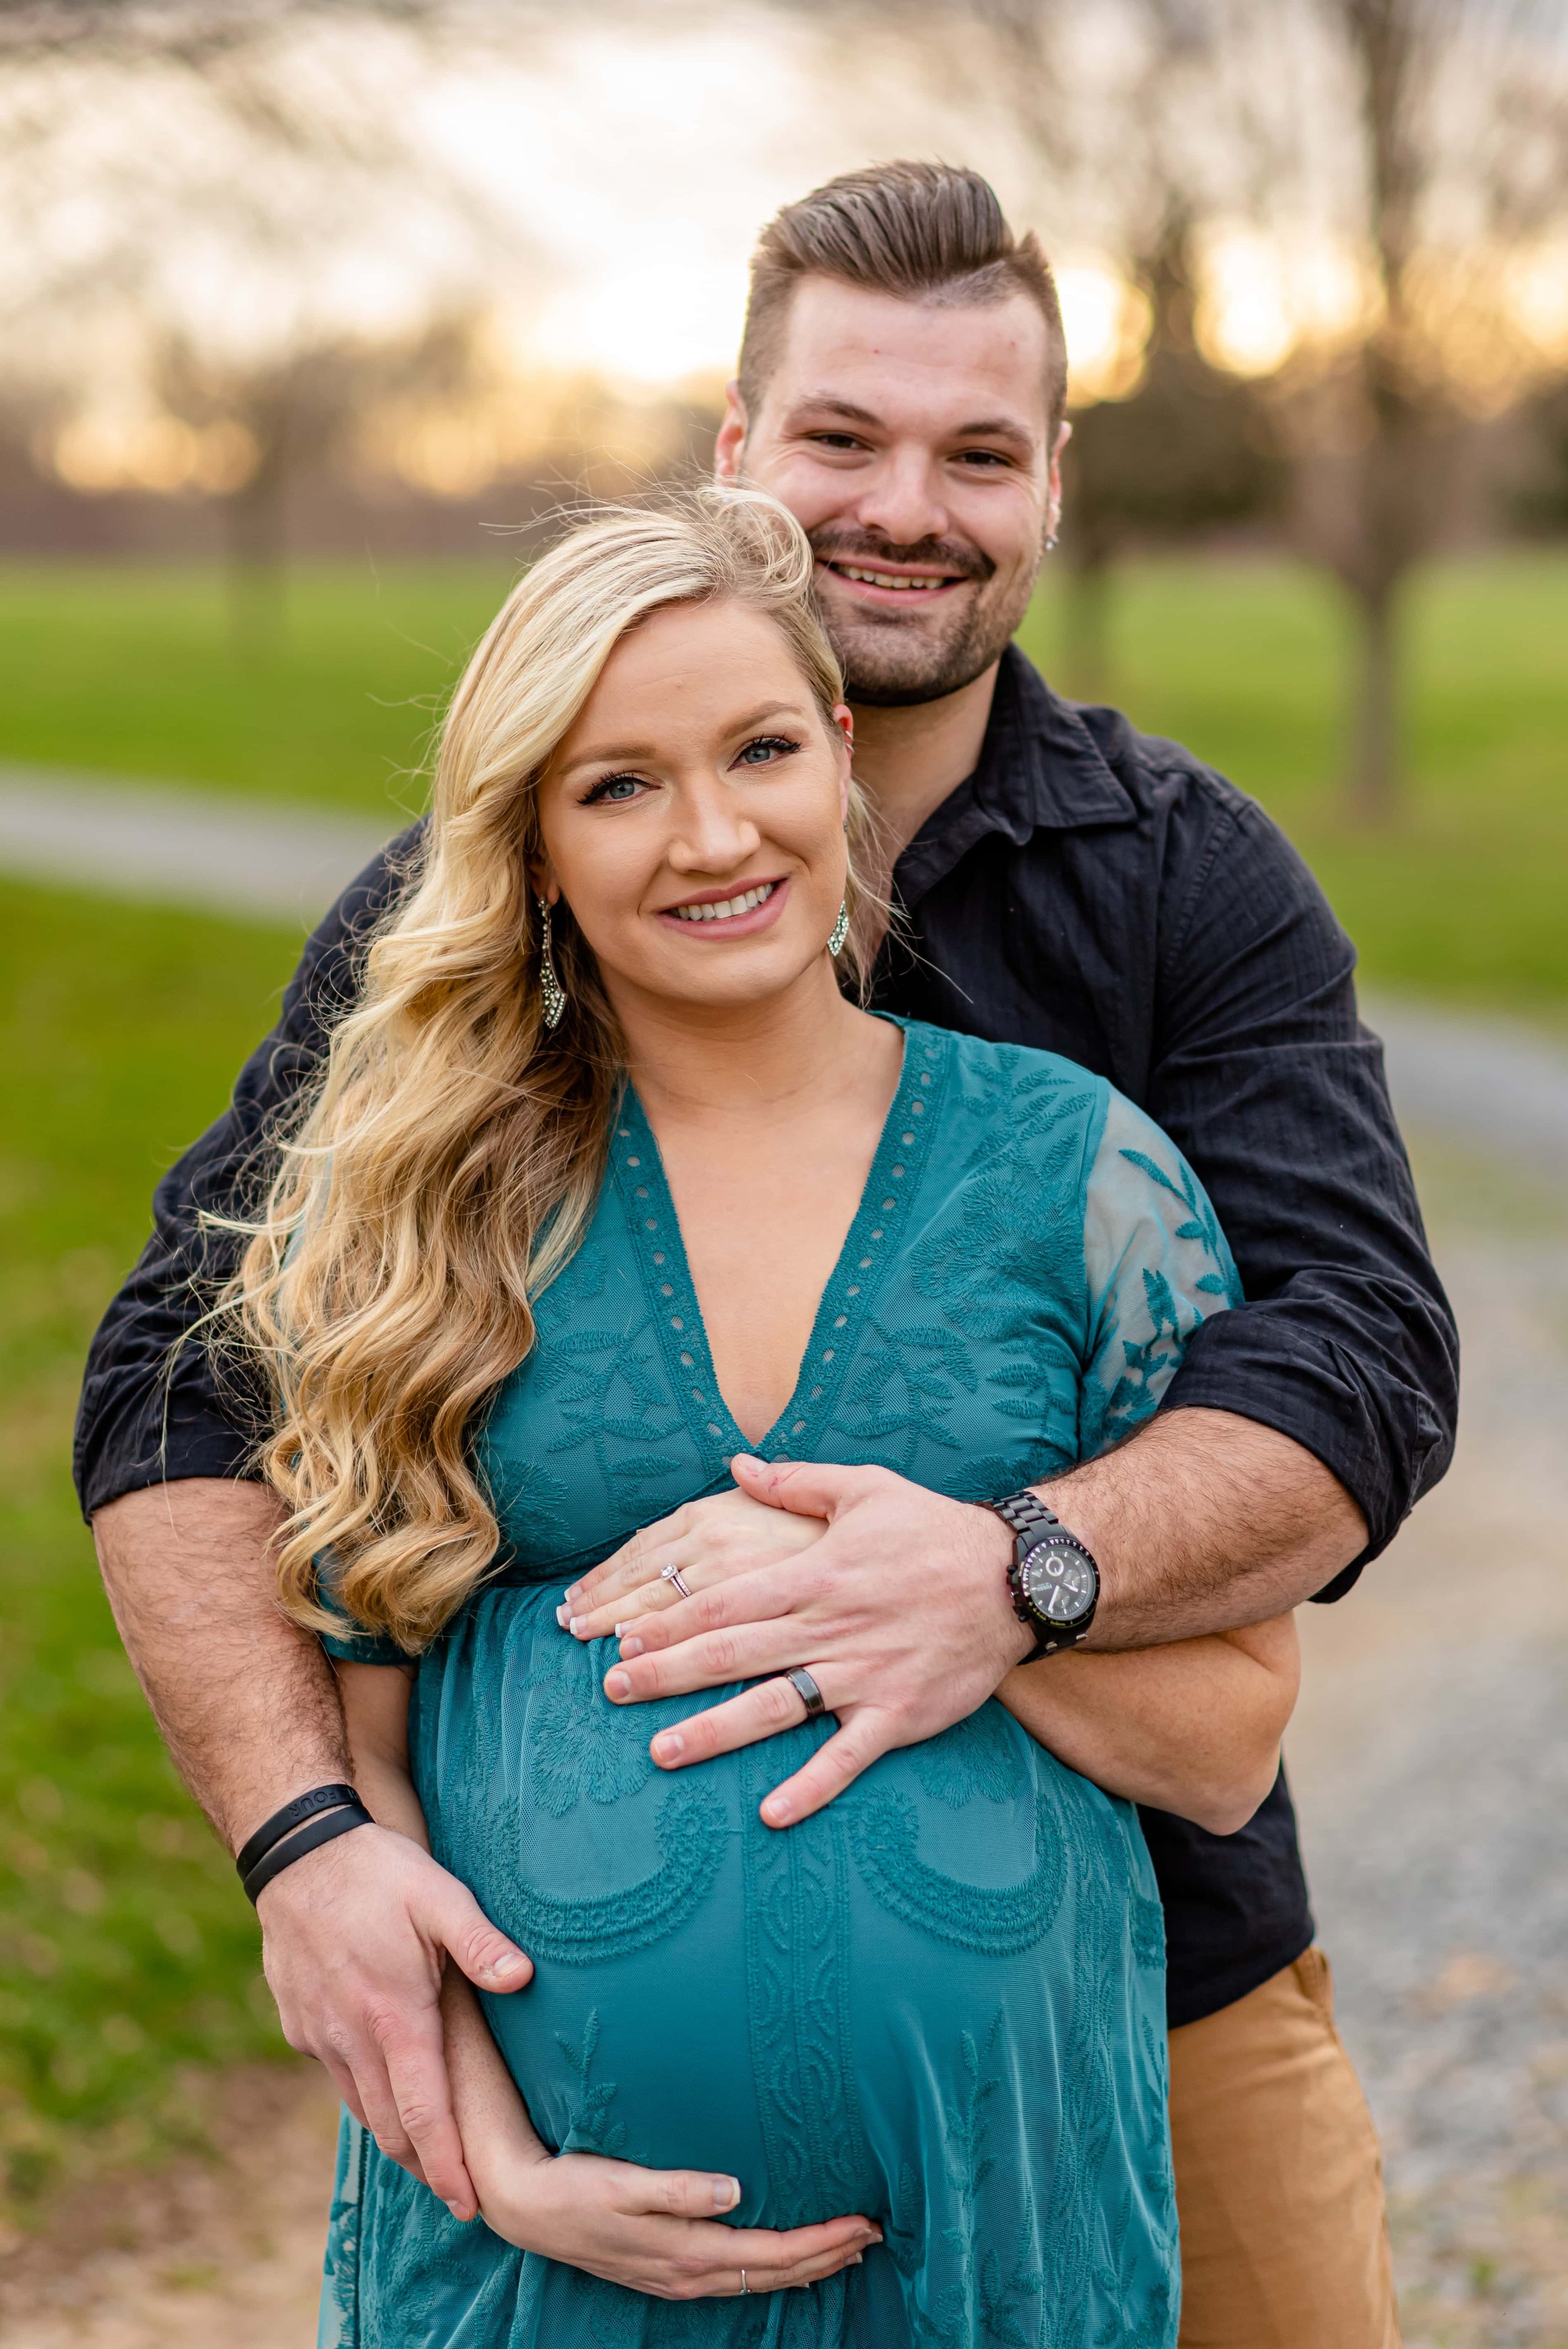 Maryland Maternity Photoshoot with expecting couple